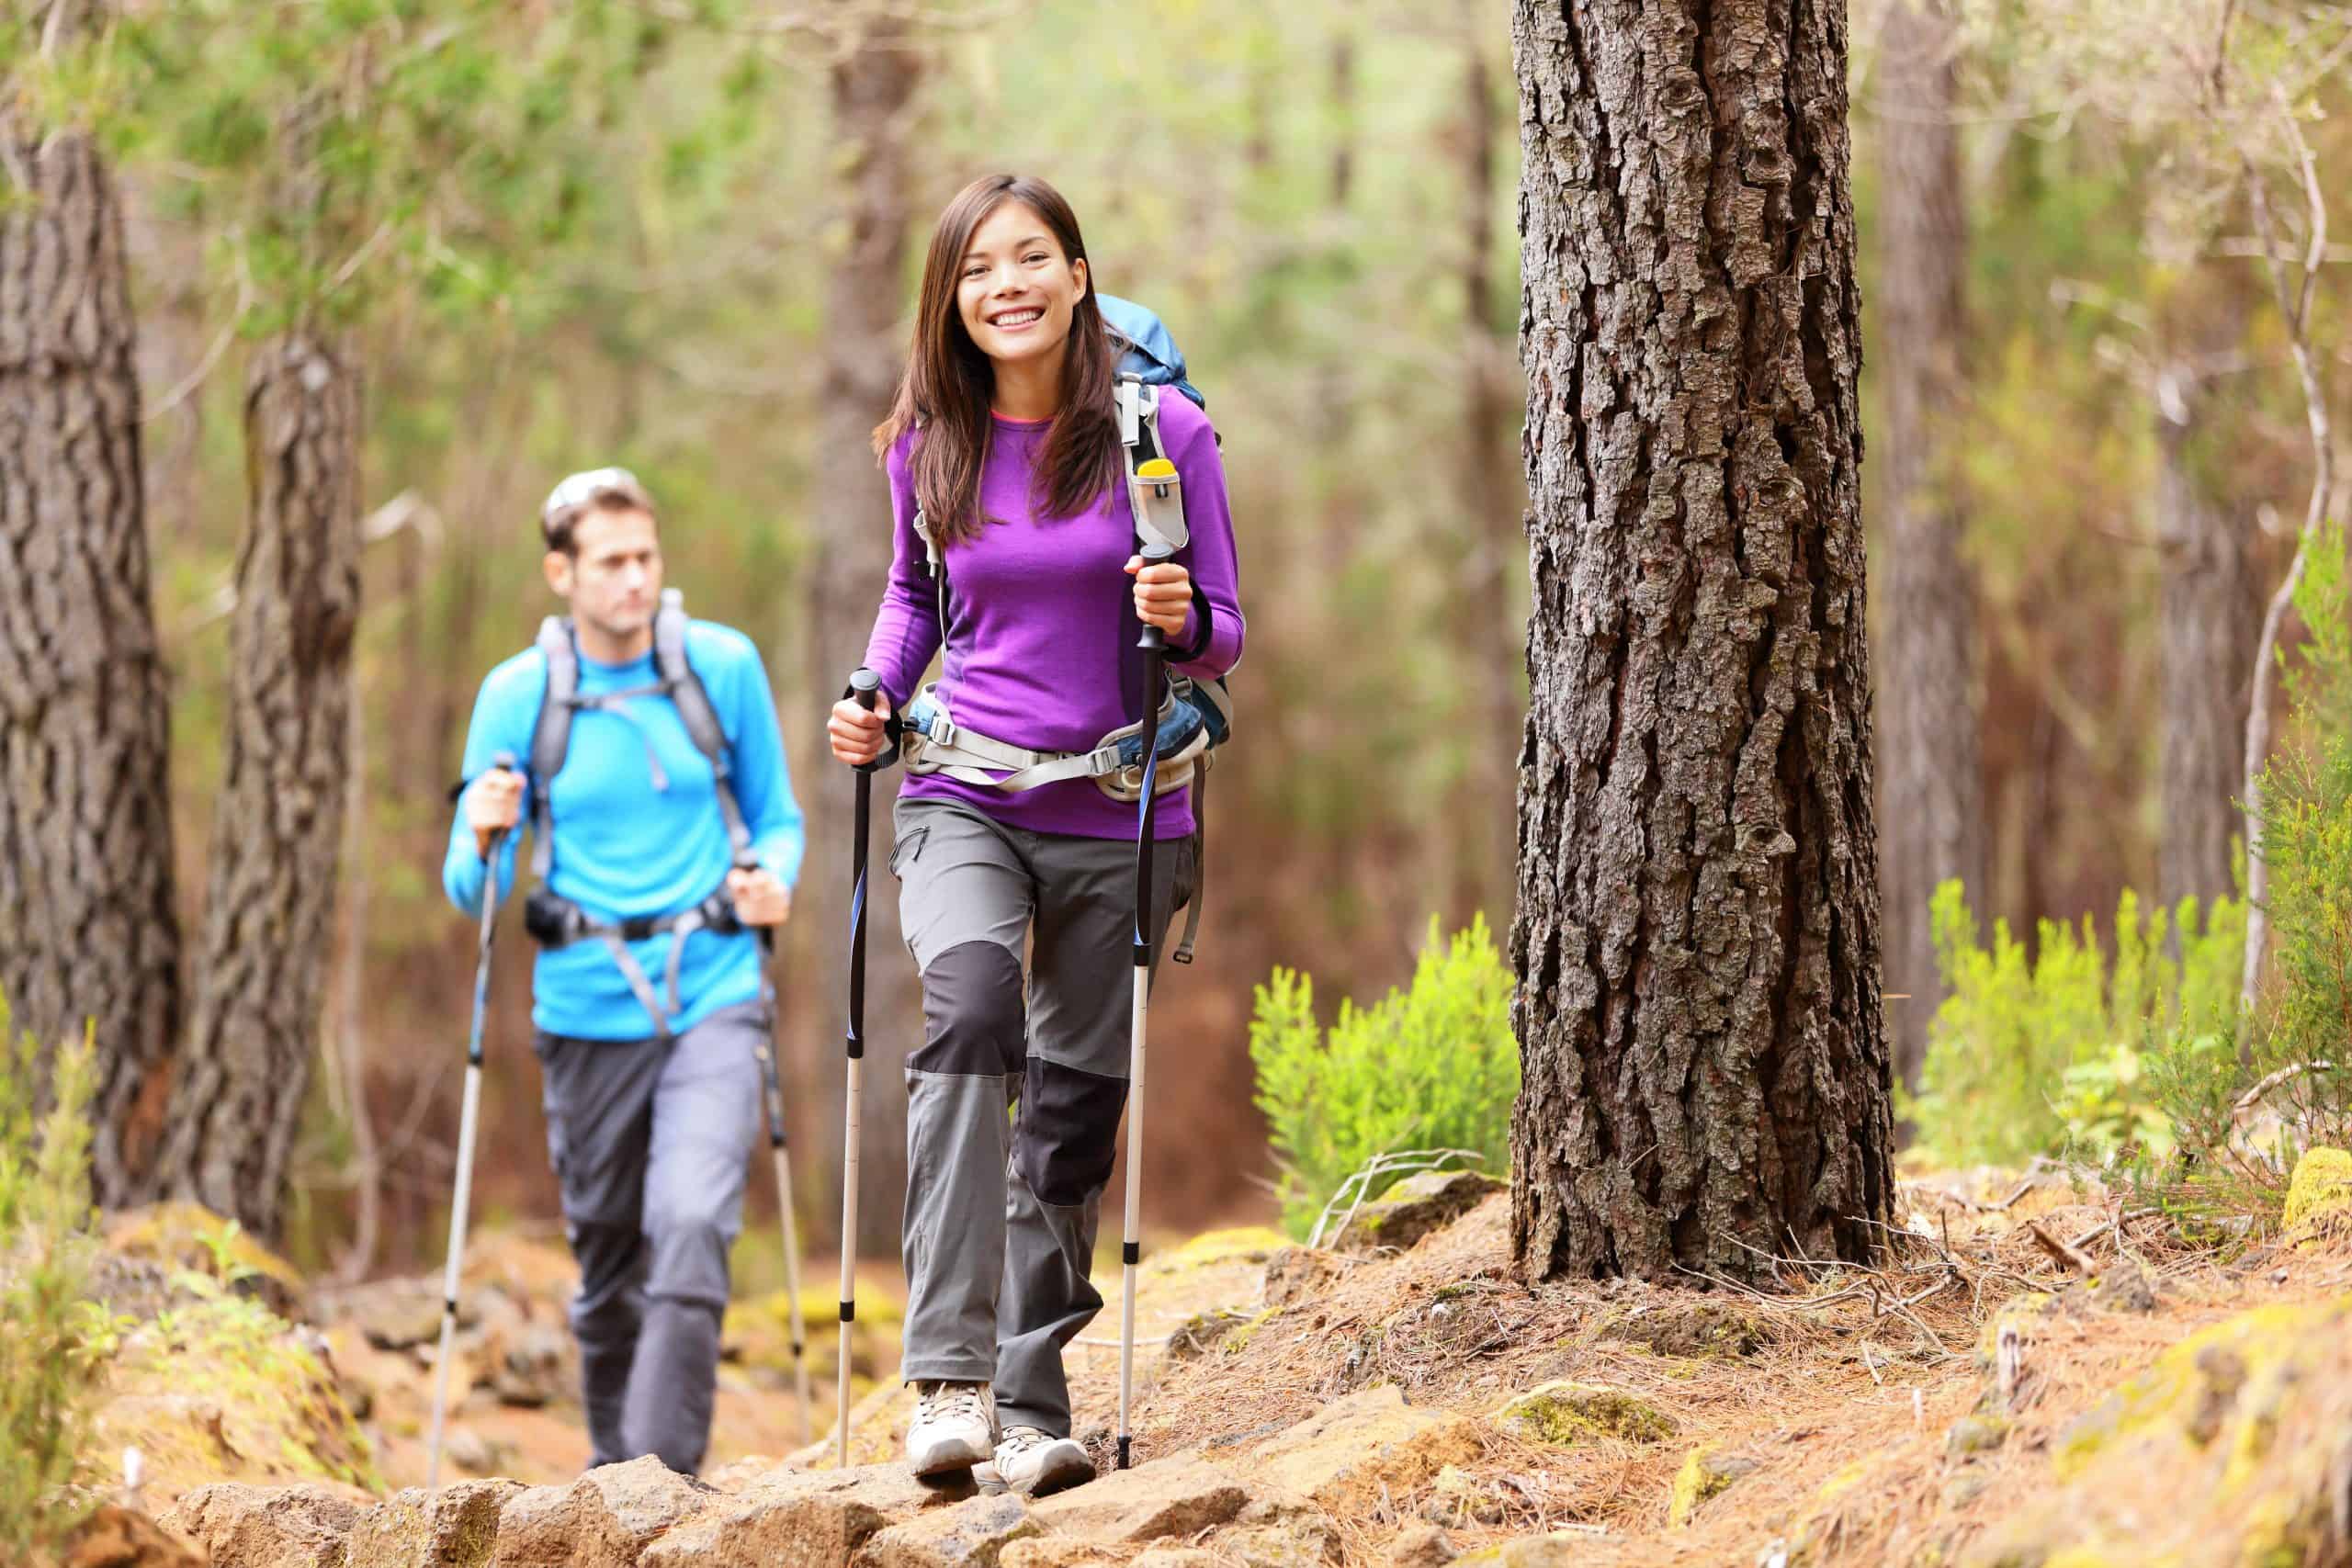 Поход активный отдых. Треккинг хайкинг. Одежда для прогулки в лесу. Прогулка на природе. Туризм в лесу.